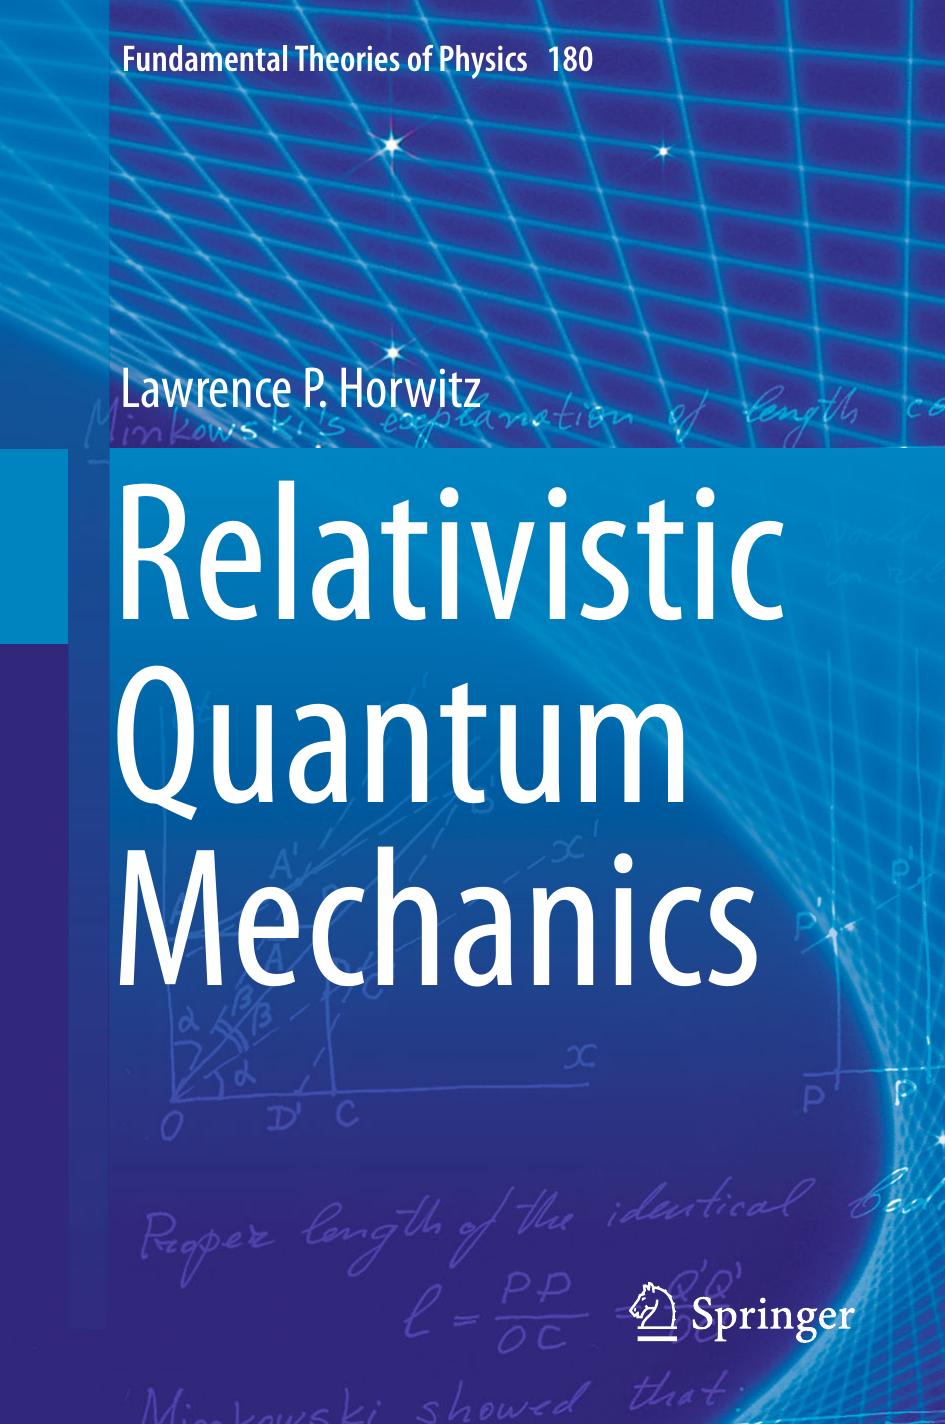 Relativistic quantum mechanics 2015